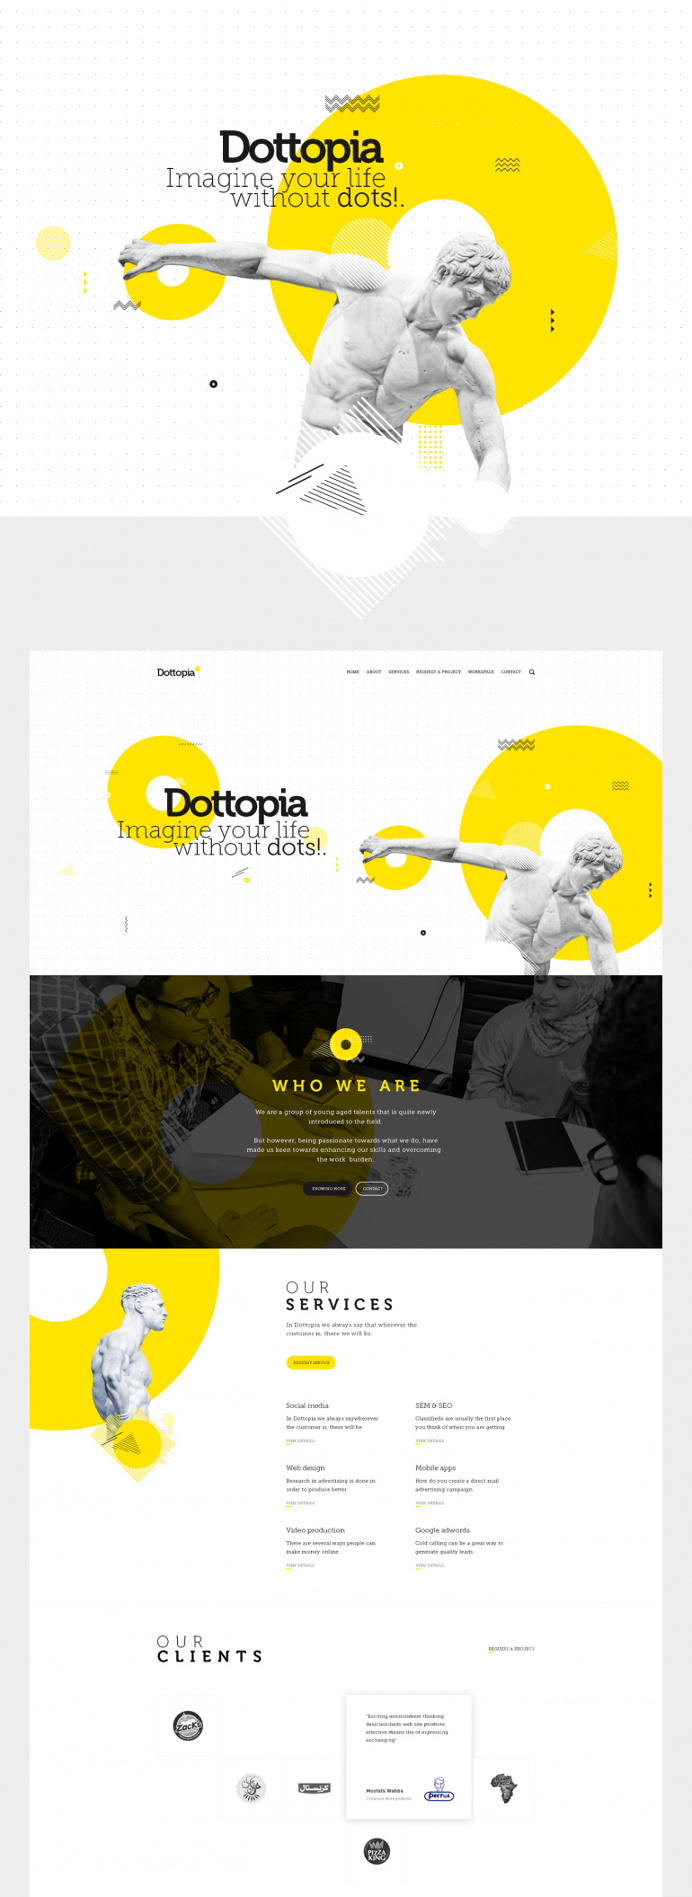 Dottopia web design UX/UI